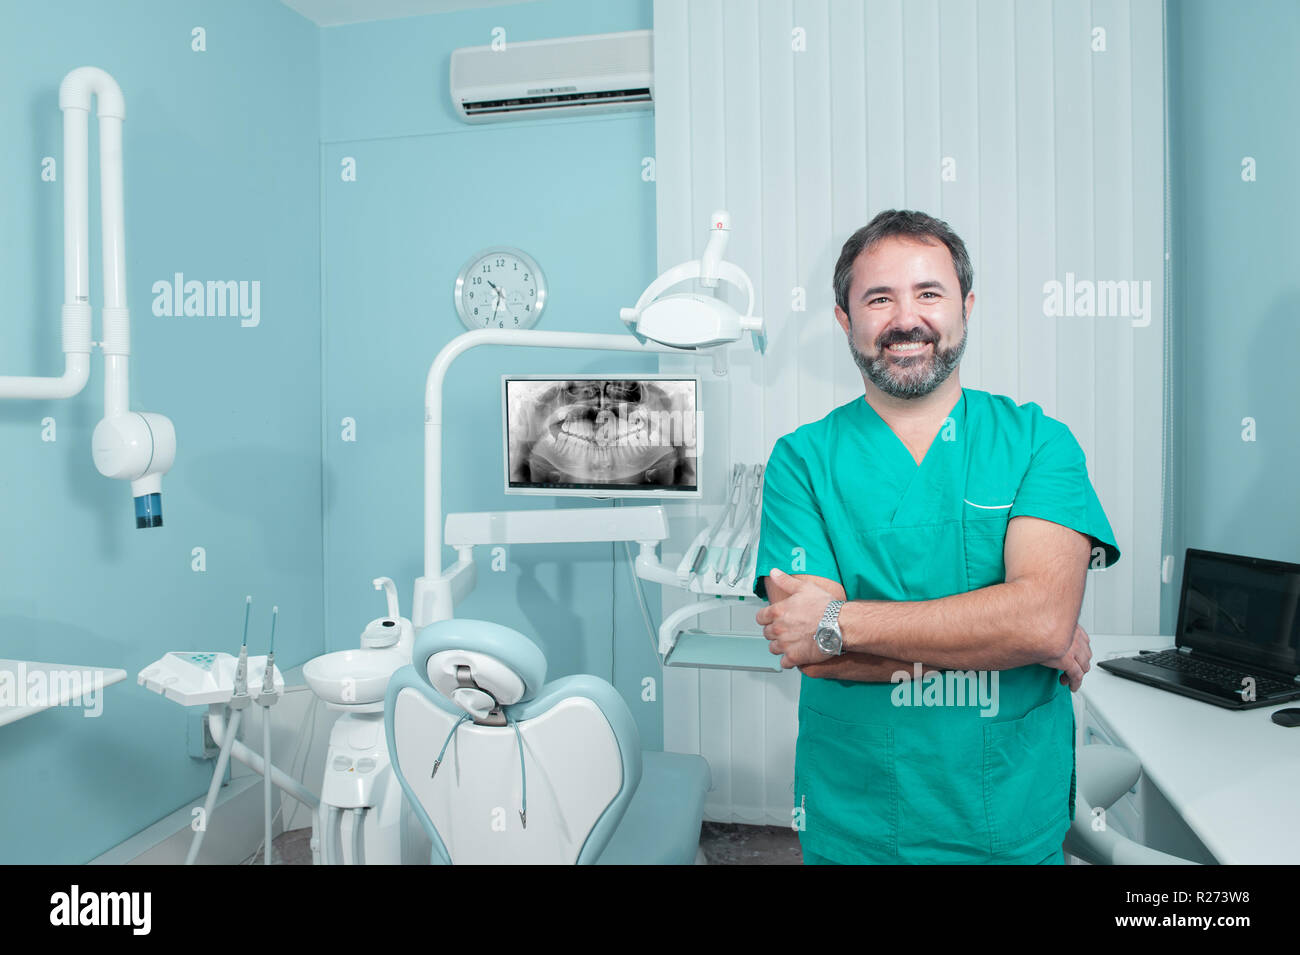 Lächelnd kaukasischen männlicher Arzt an der Kamera in Zahnarzt Studio suchen, Panoramablick auf das x-ray auf dem Bildschirm, eine Person, Modell freigegeben Stockfoto